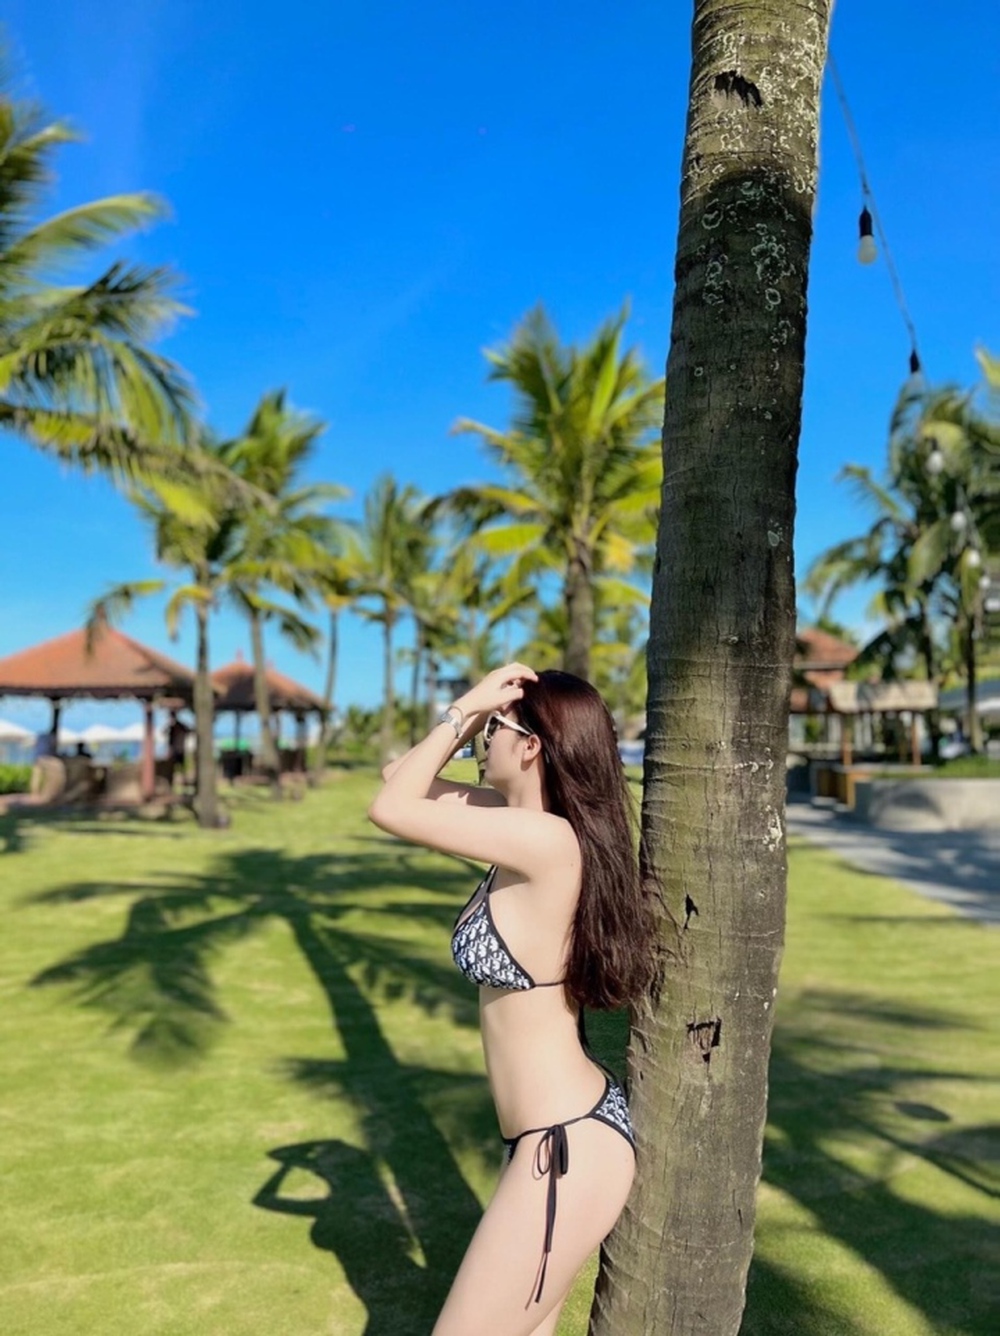 Nữ tuyển thủ Việt Nam tung ảnh bikini quyến rũ gây sốt mạng xã hội - ảnh 2